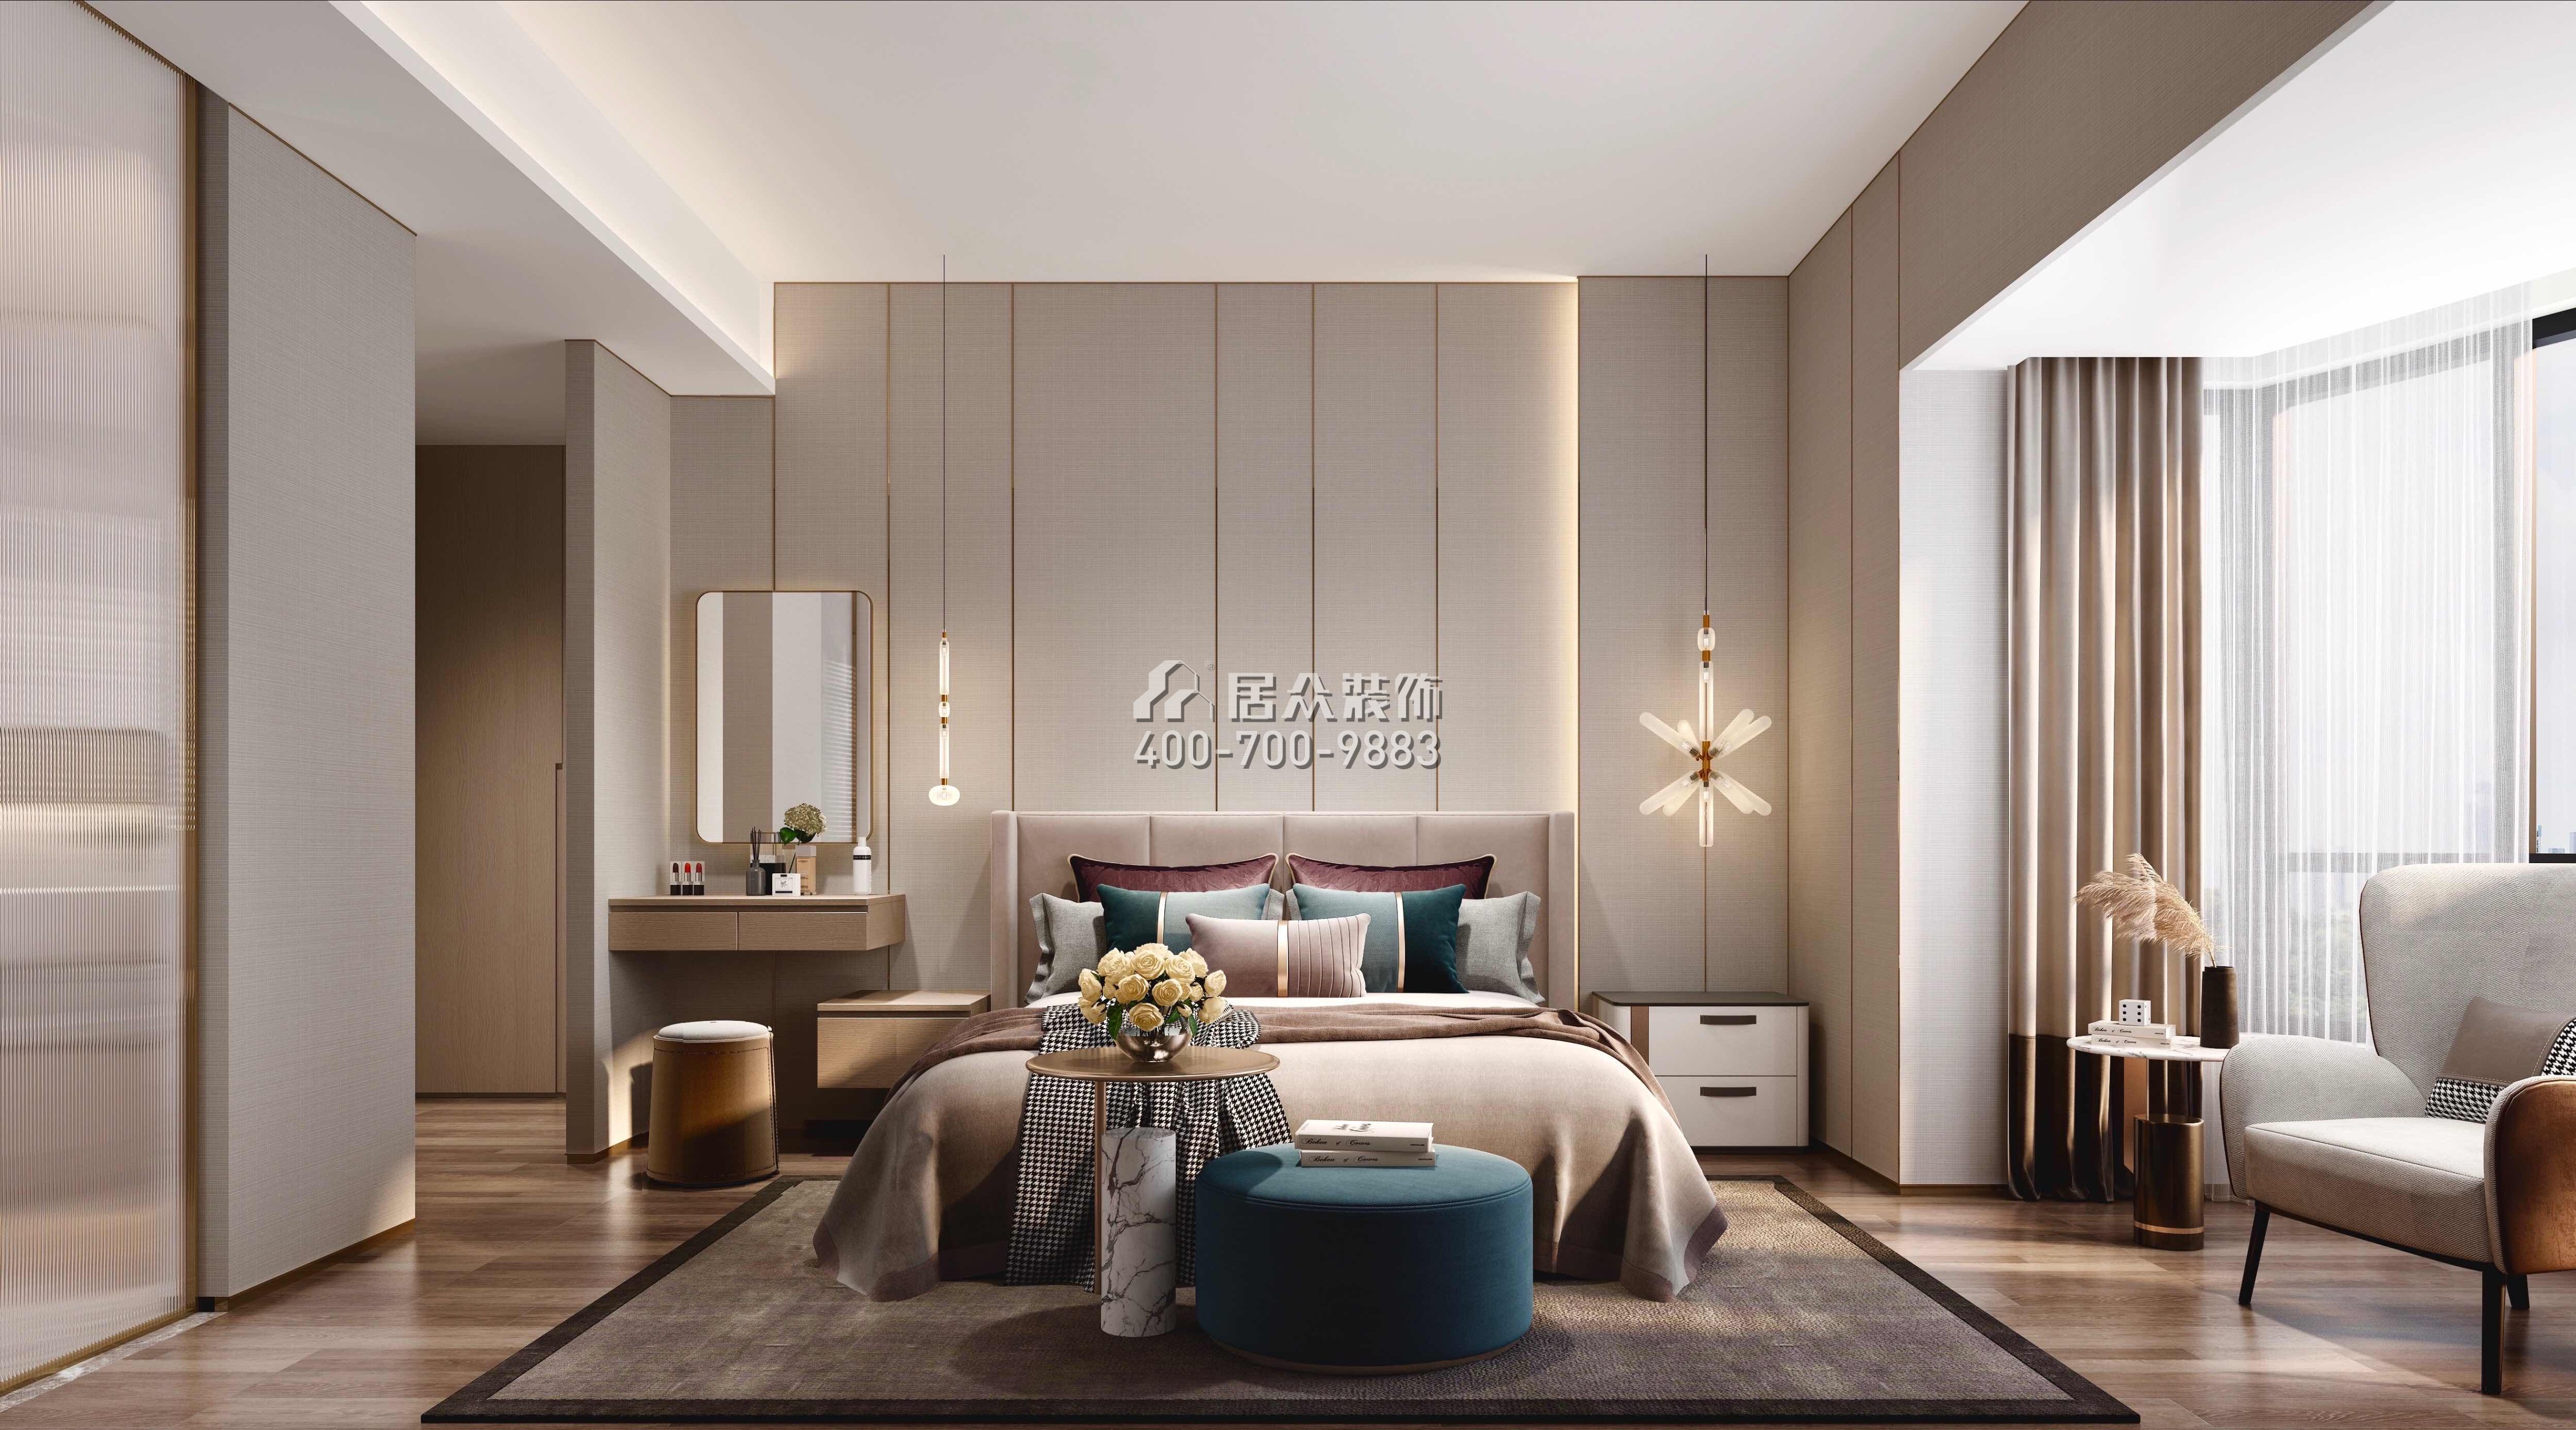 招商海月130平方米现代简约风格平层户型卧室装修效果图